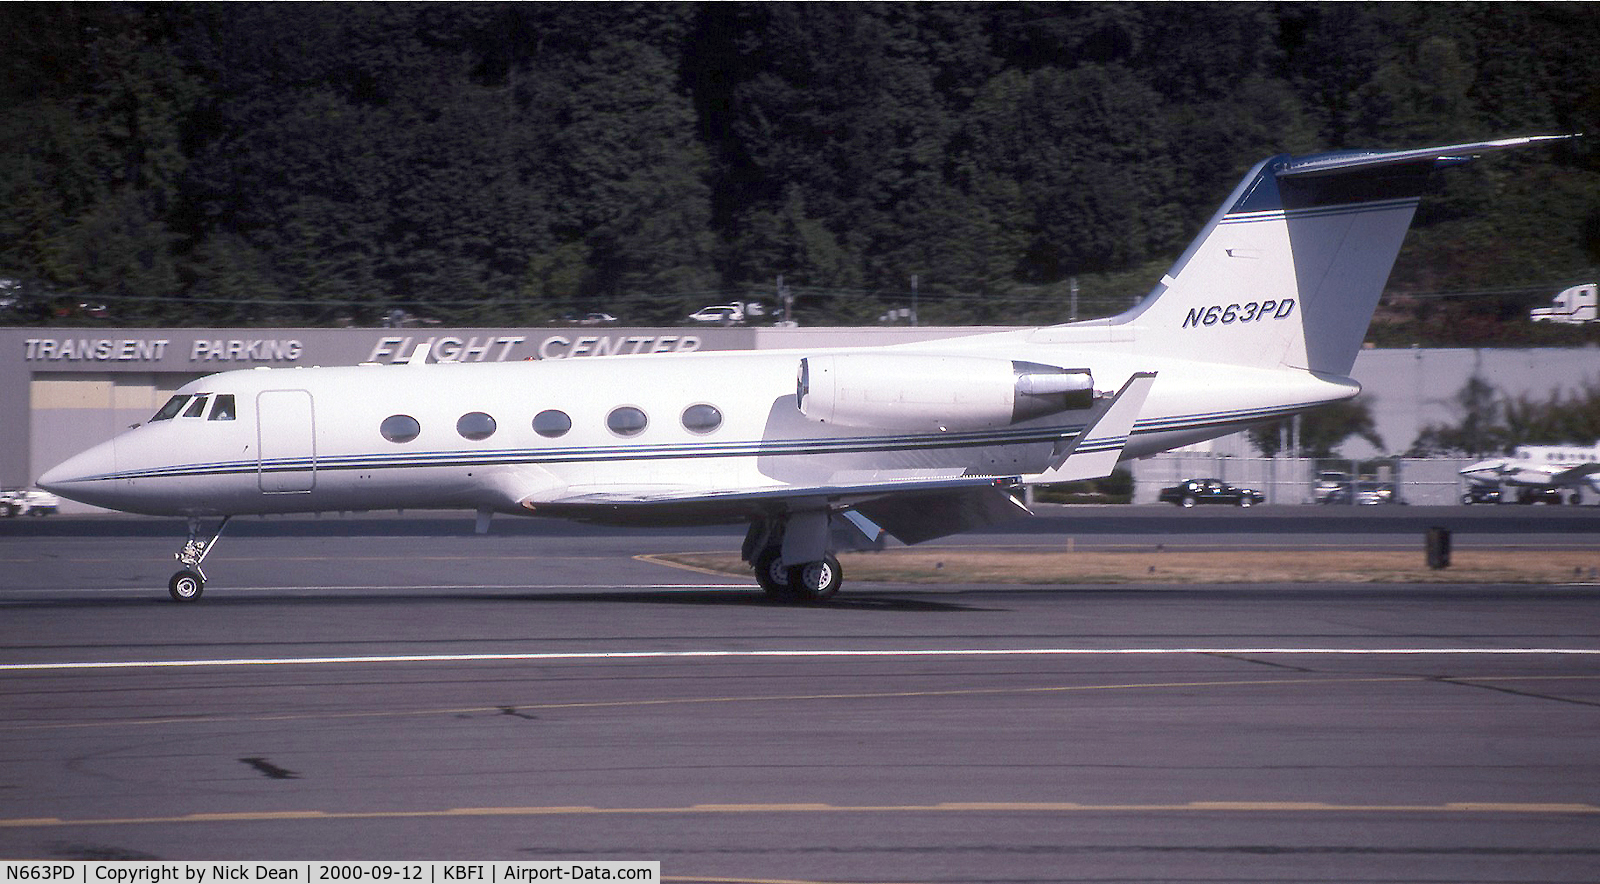 N663PD, 1973 Grumman G1159 Gulfstream IIB C/N 139, KBFI